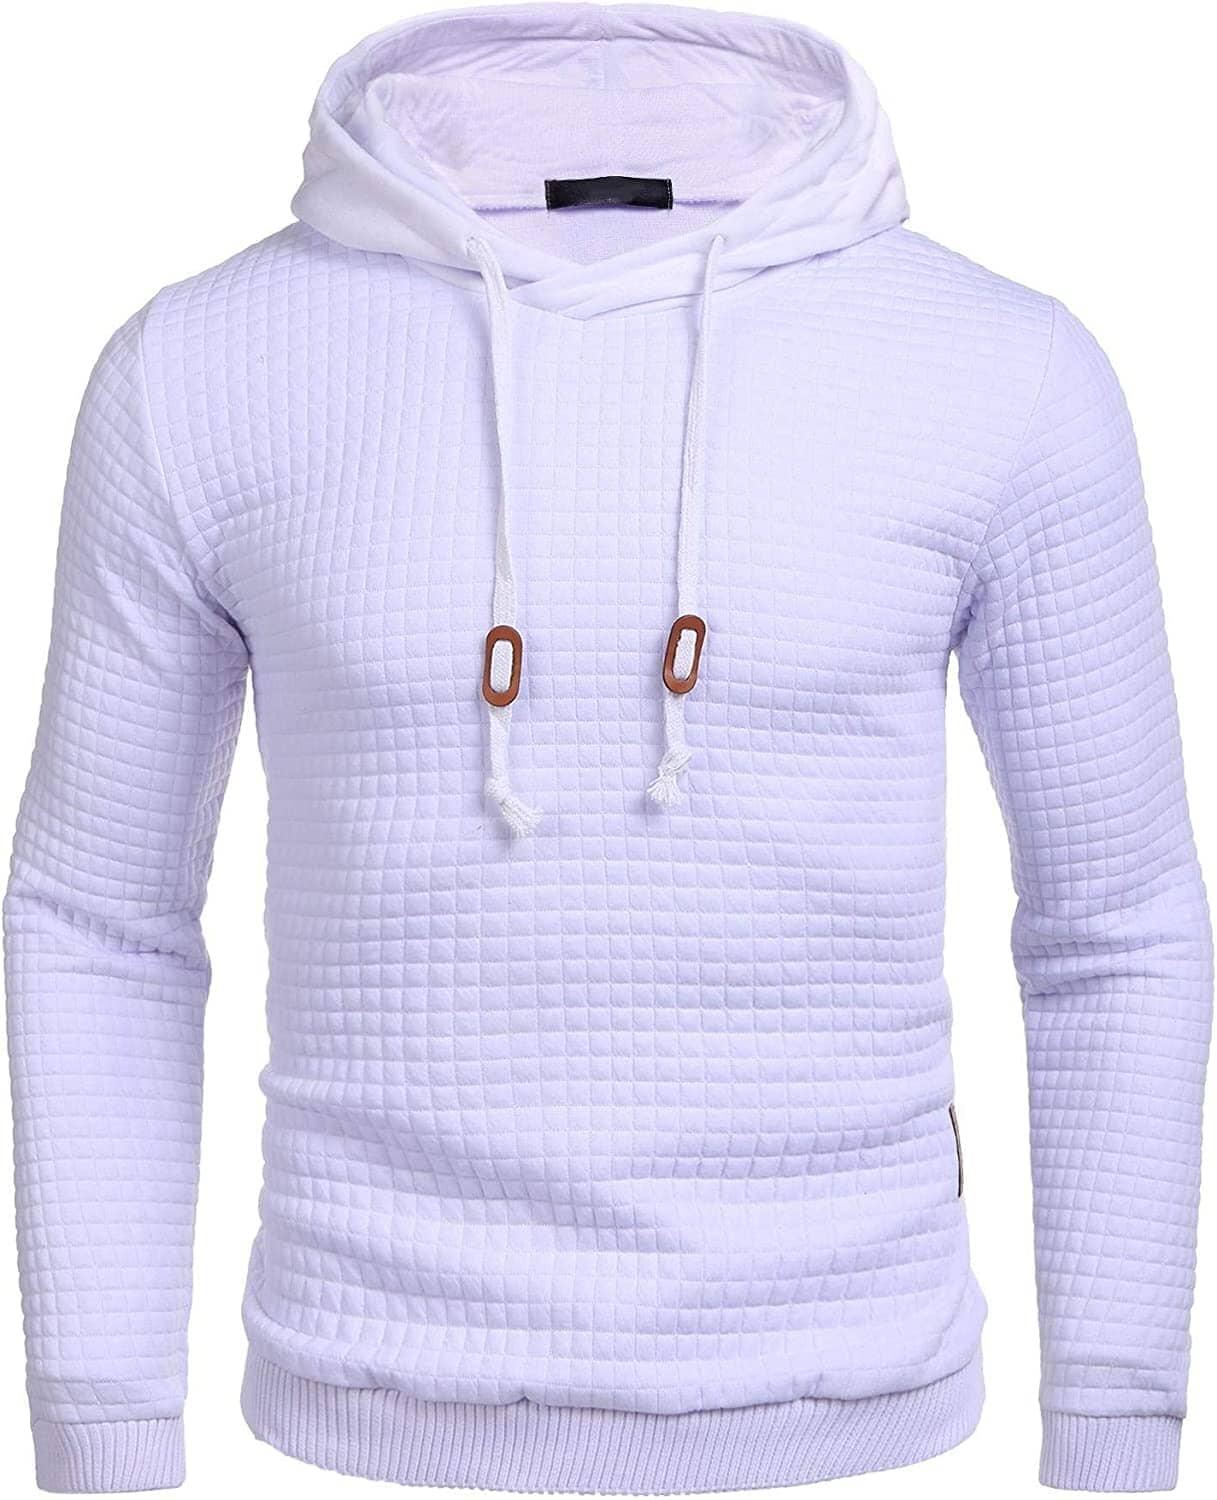 Gym Drawstring Plaid Jacquard Hoodie (US Only) Fashion Hoodies & Sweatshirts COOFANDY Store White S 